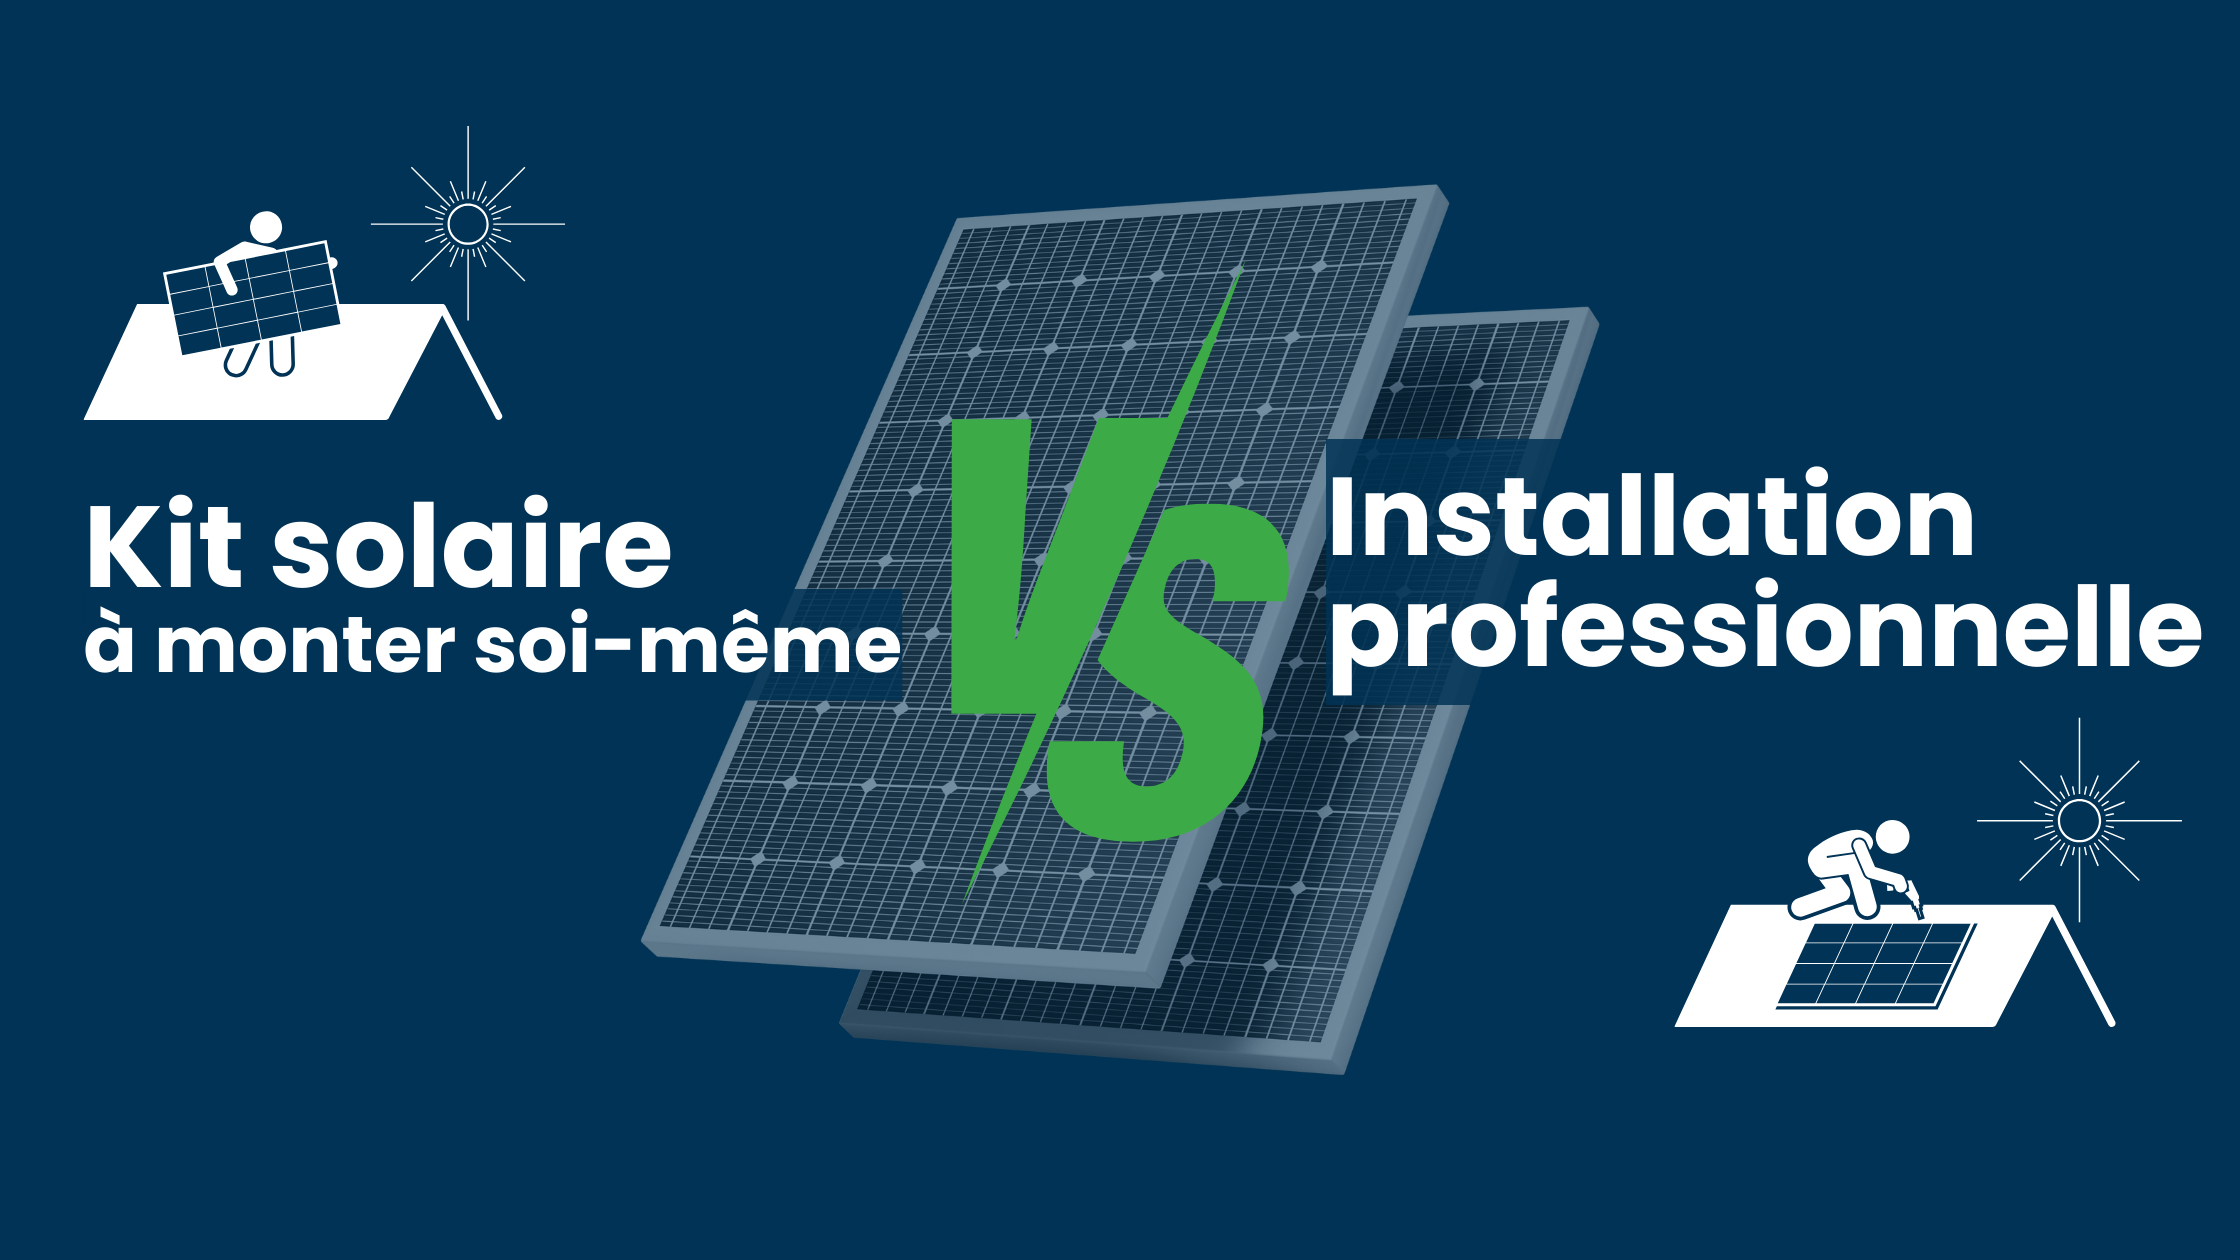 Kit solaire vs Installation par un Professionnel : Que choisir ?